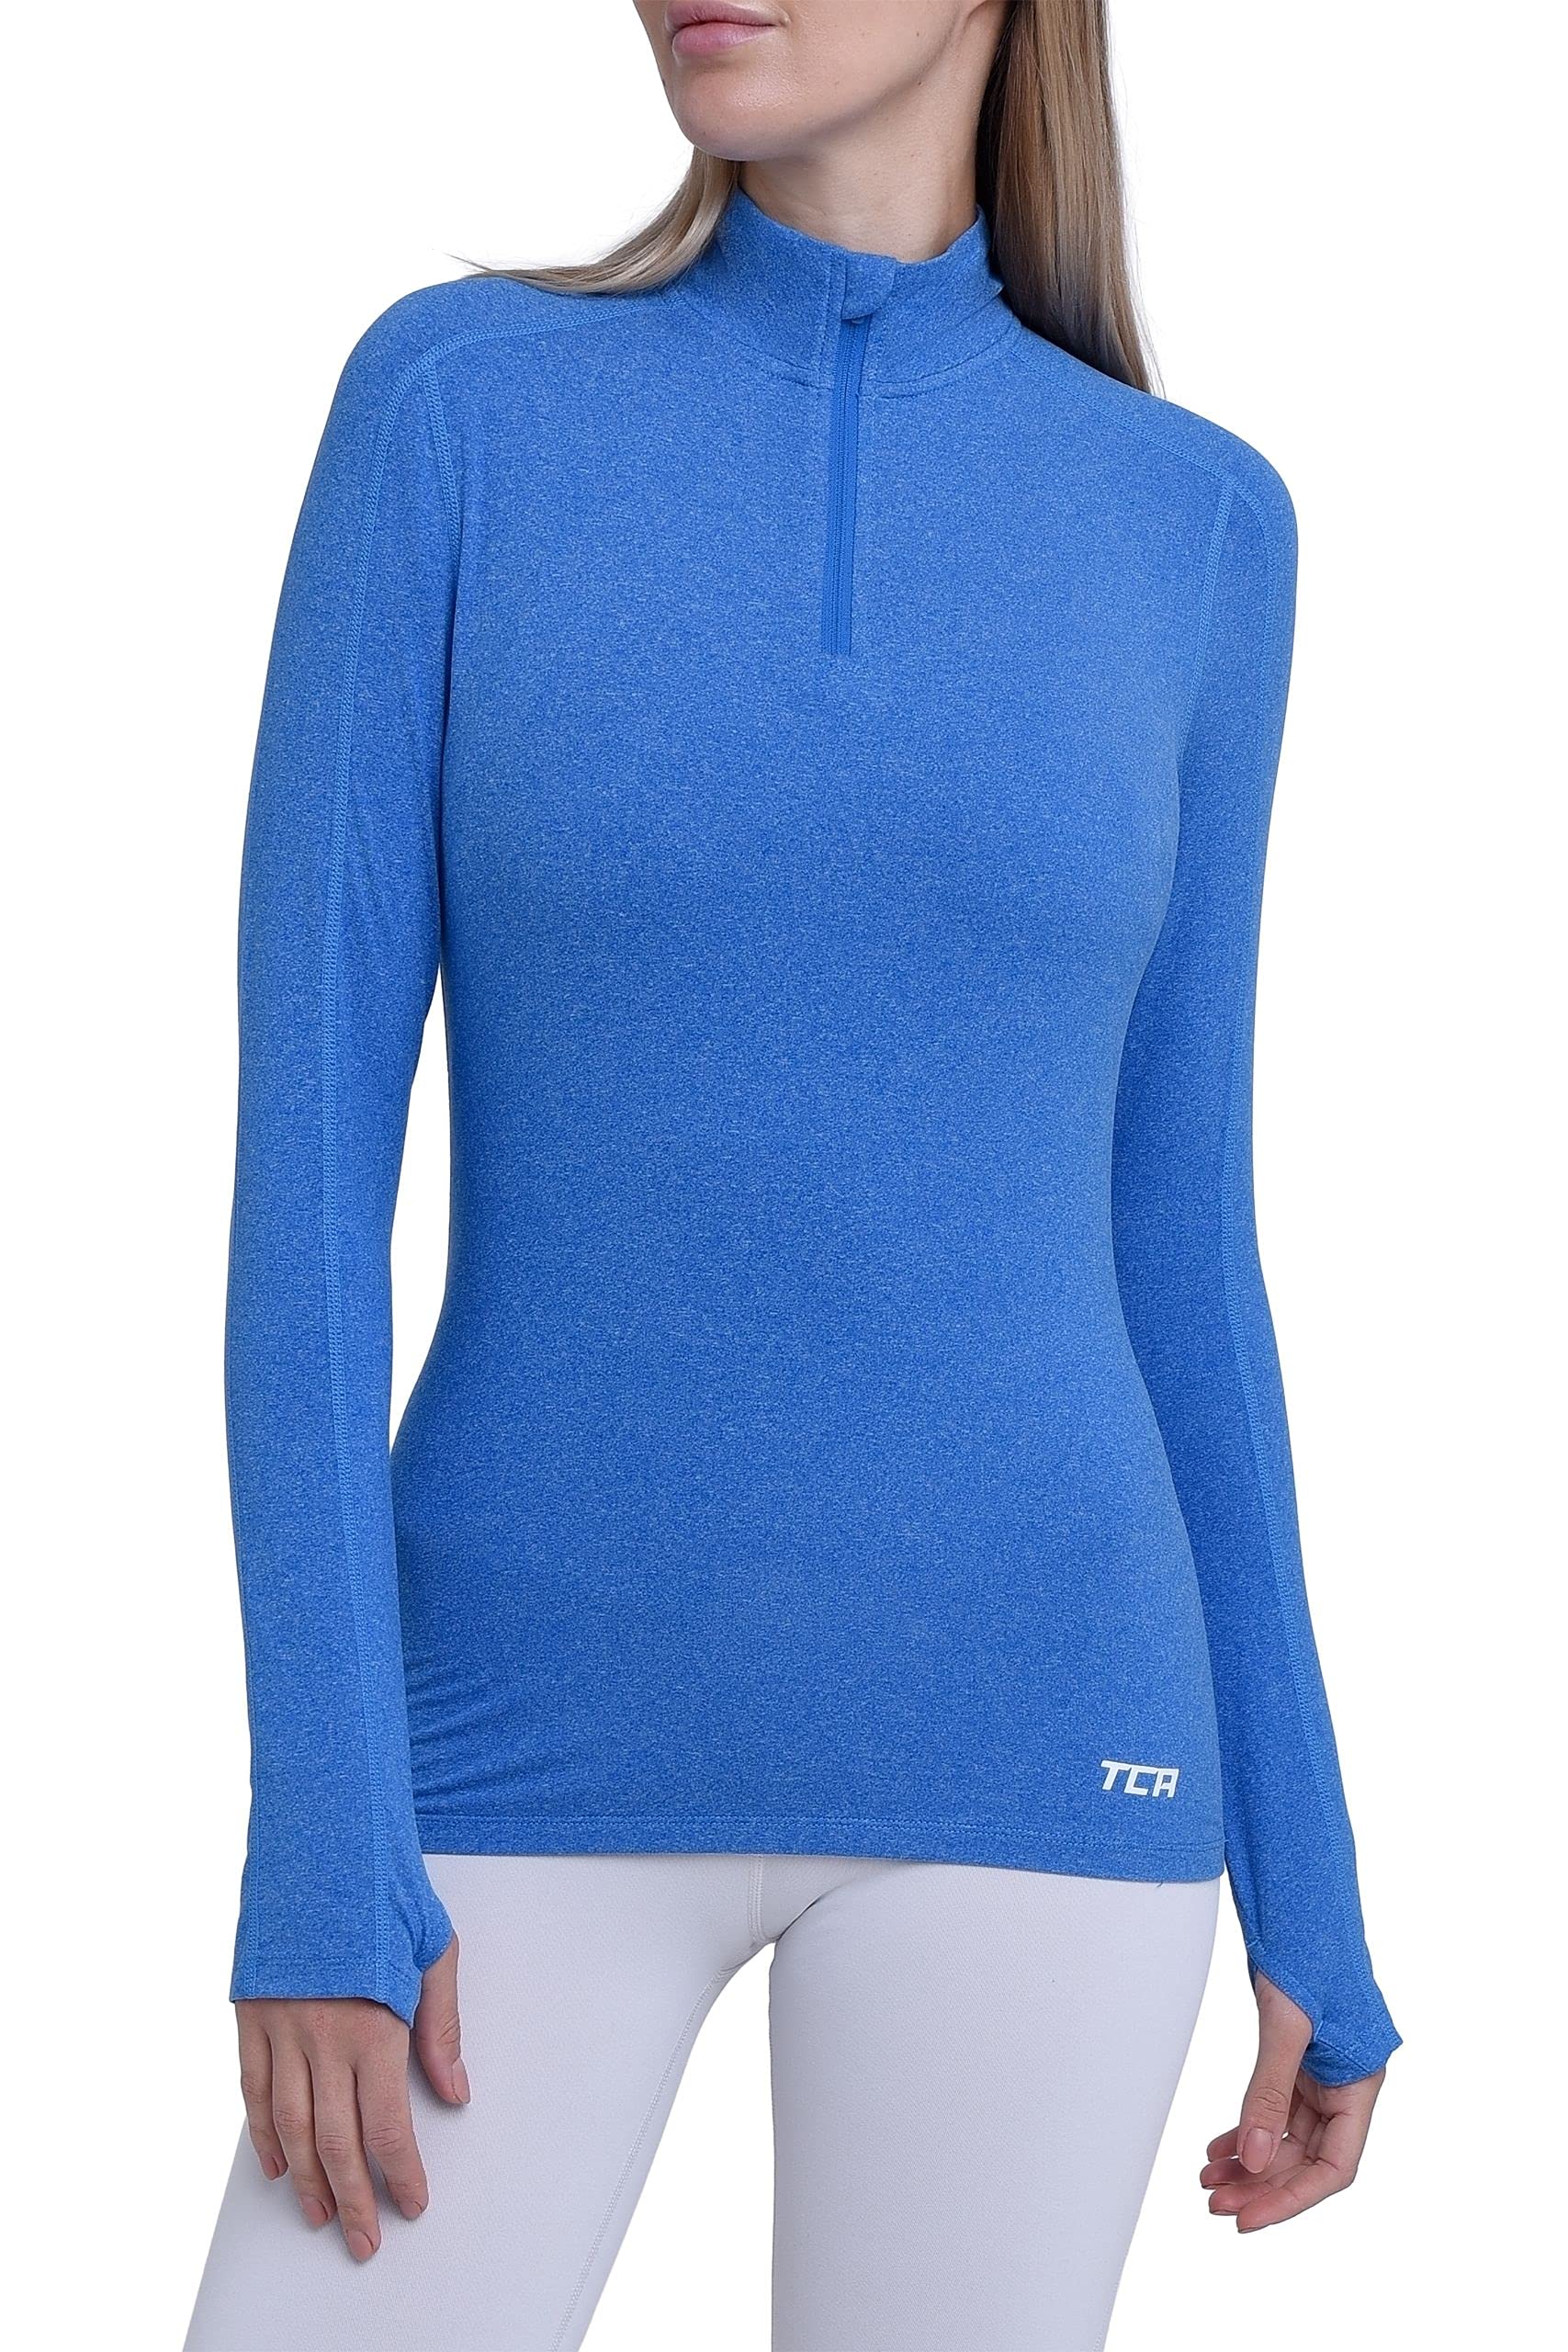 TCA Damen Fusion Quickdry Leichtes Laufshirt mit Reißverschlusstasche - Blau, S